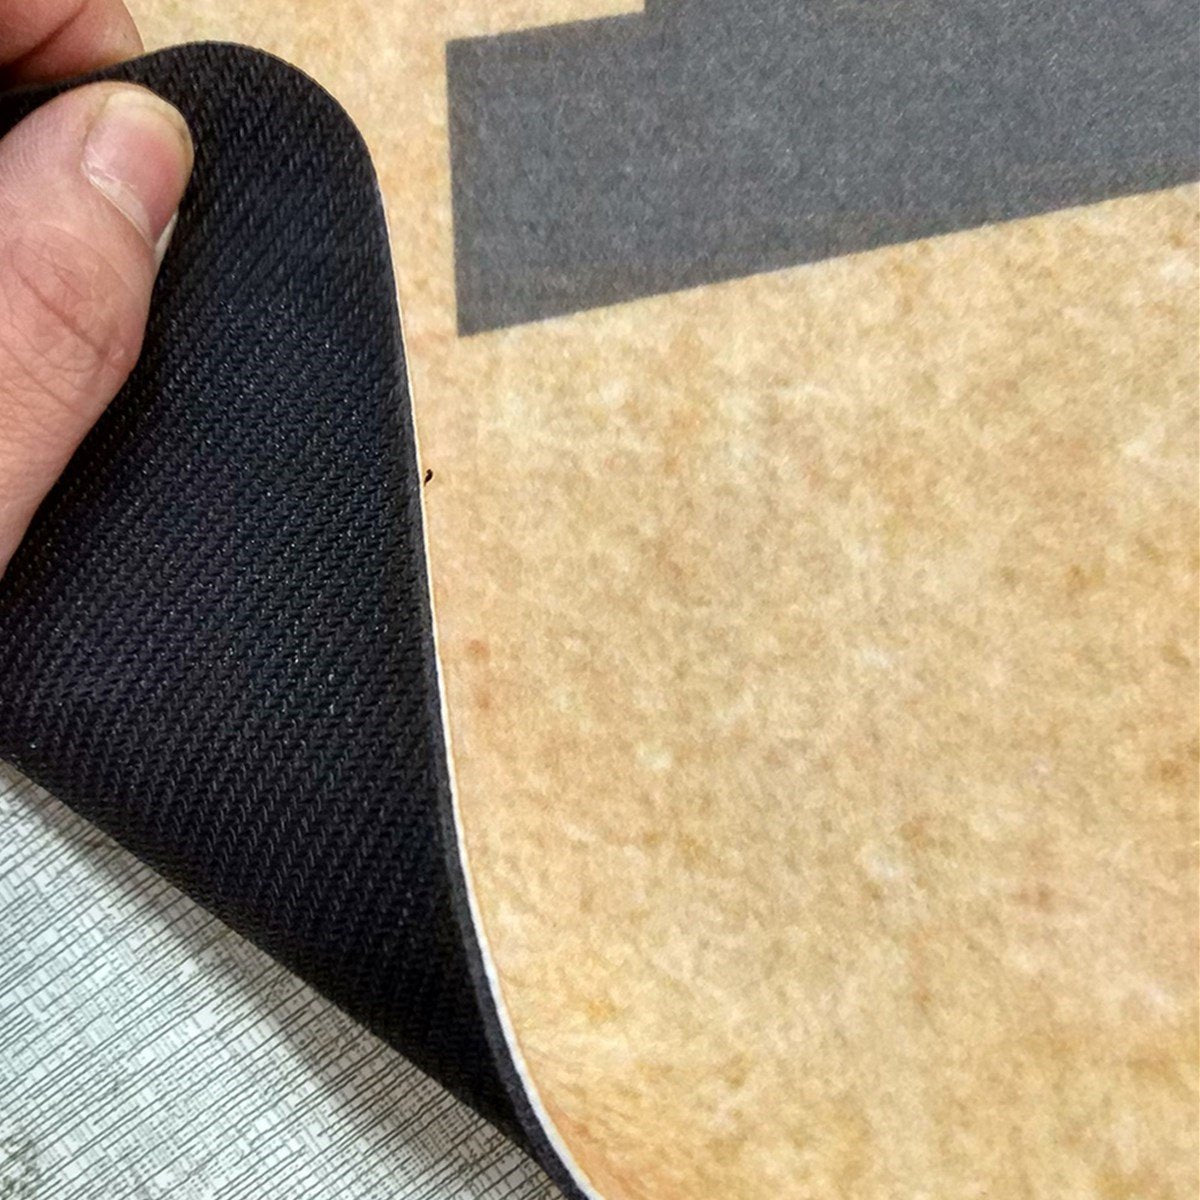 Please RemoveYour Shoes Doormat Funny Indoor/Outdoor Rubber Floor Mat Non Slip